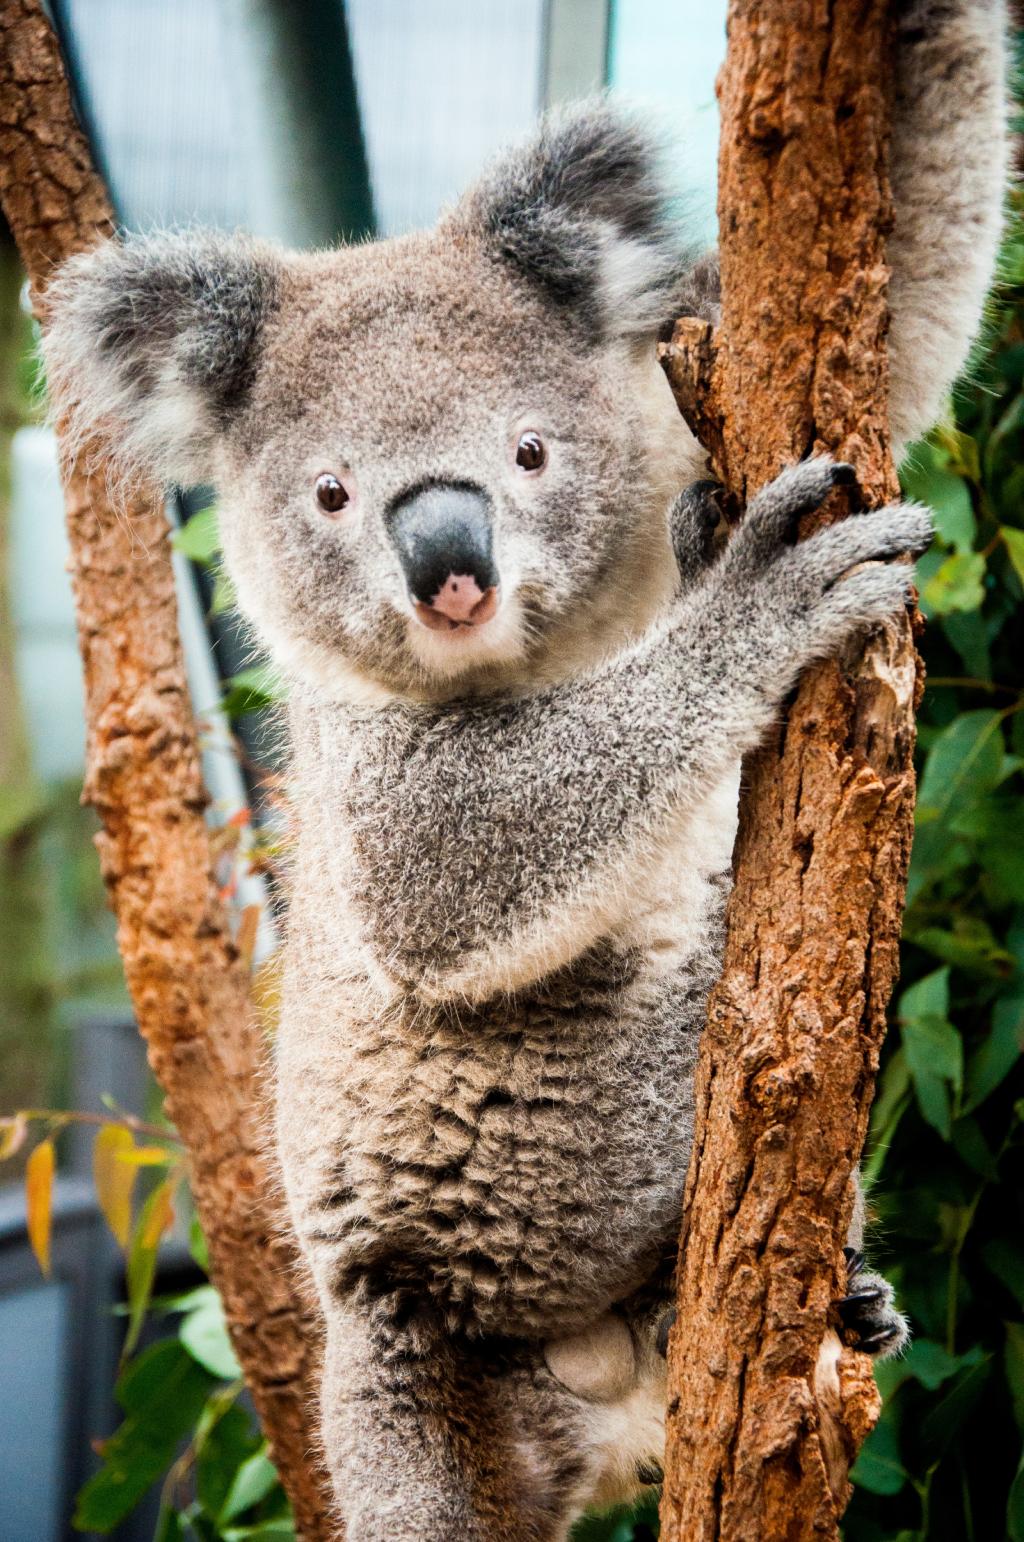 Cute koala climing